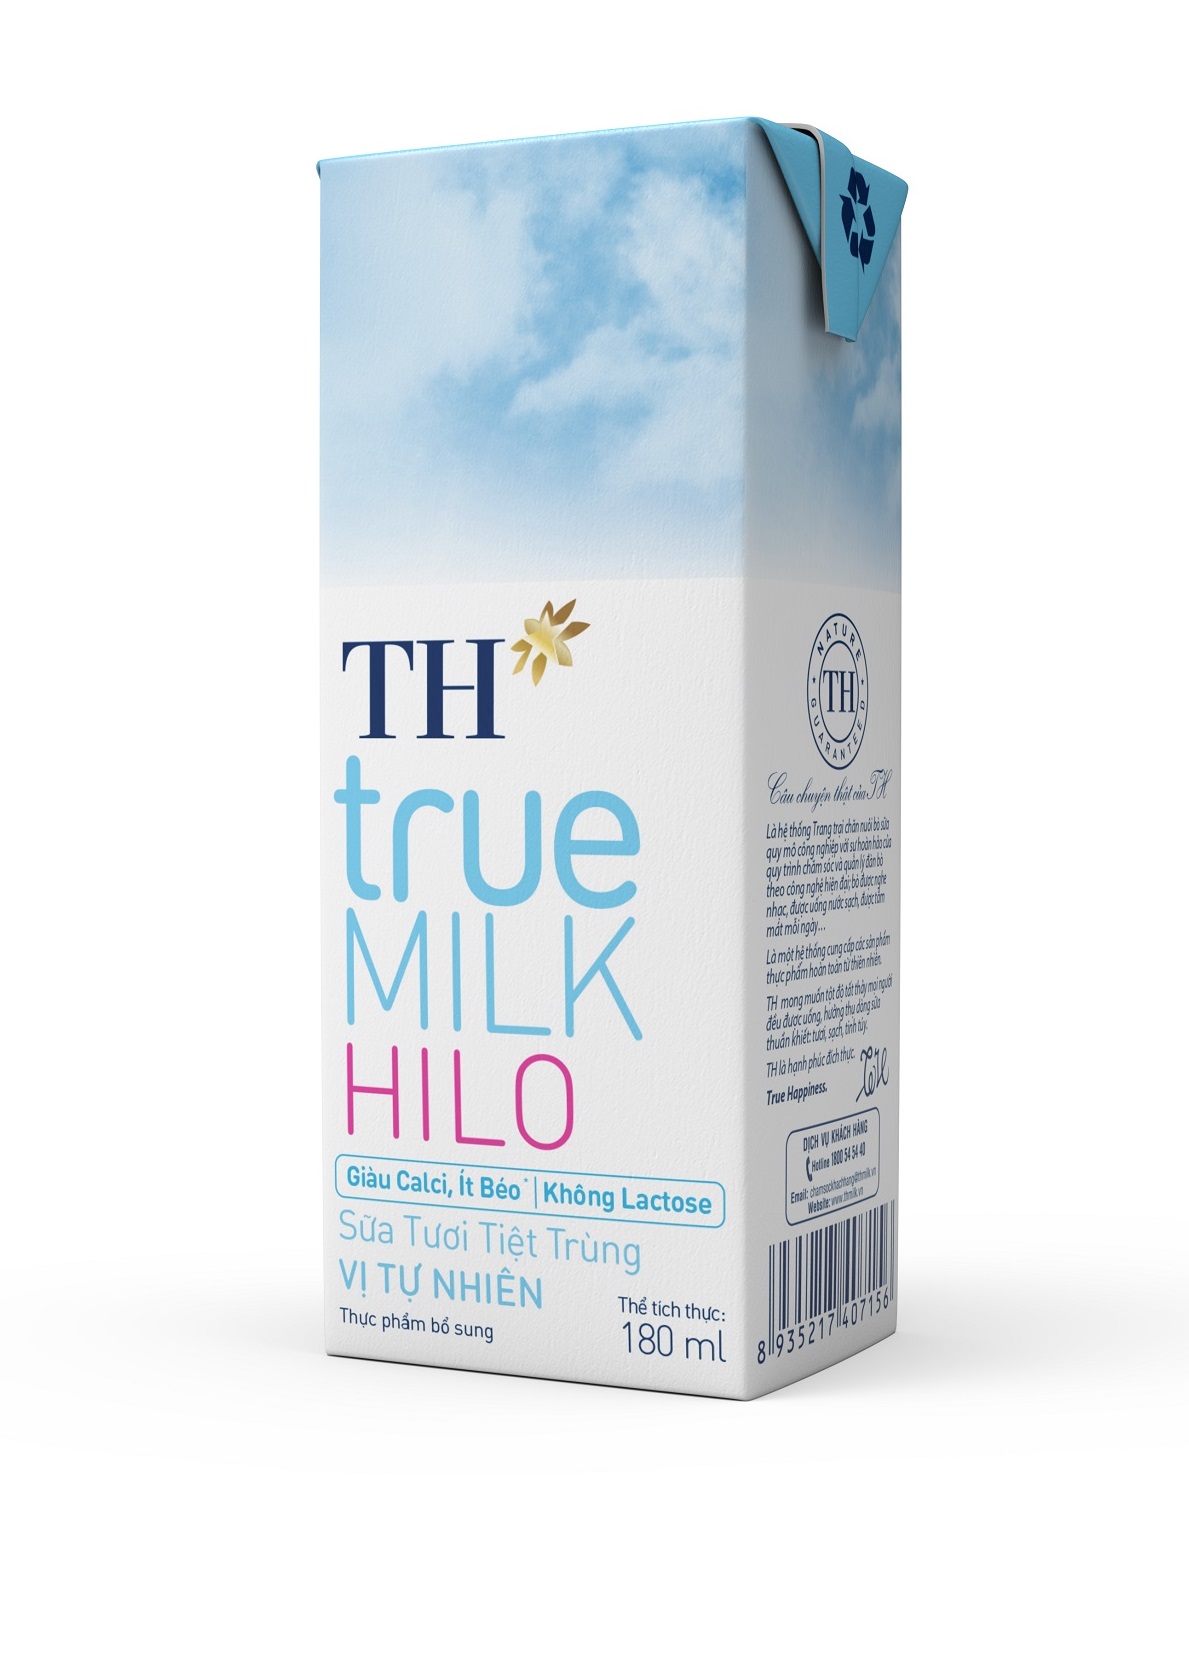 TH true MILK HILO được bổ sung nguồn calci sữa cao cấp tự nhiên